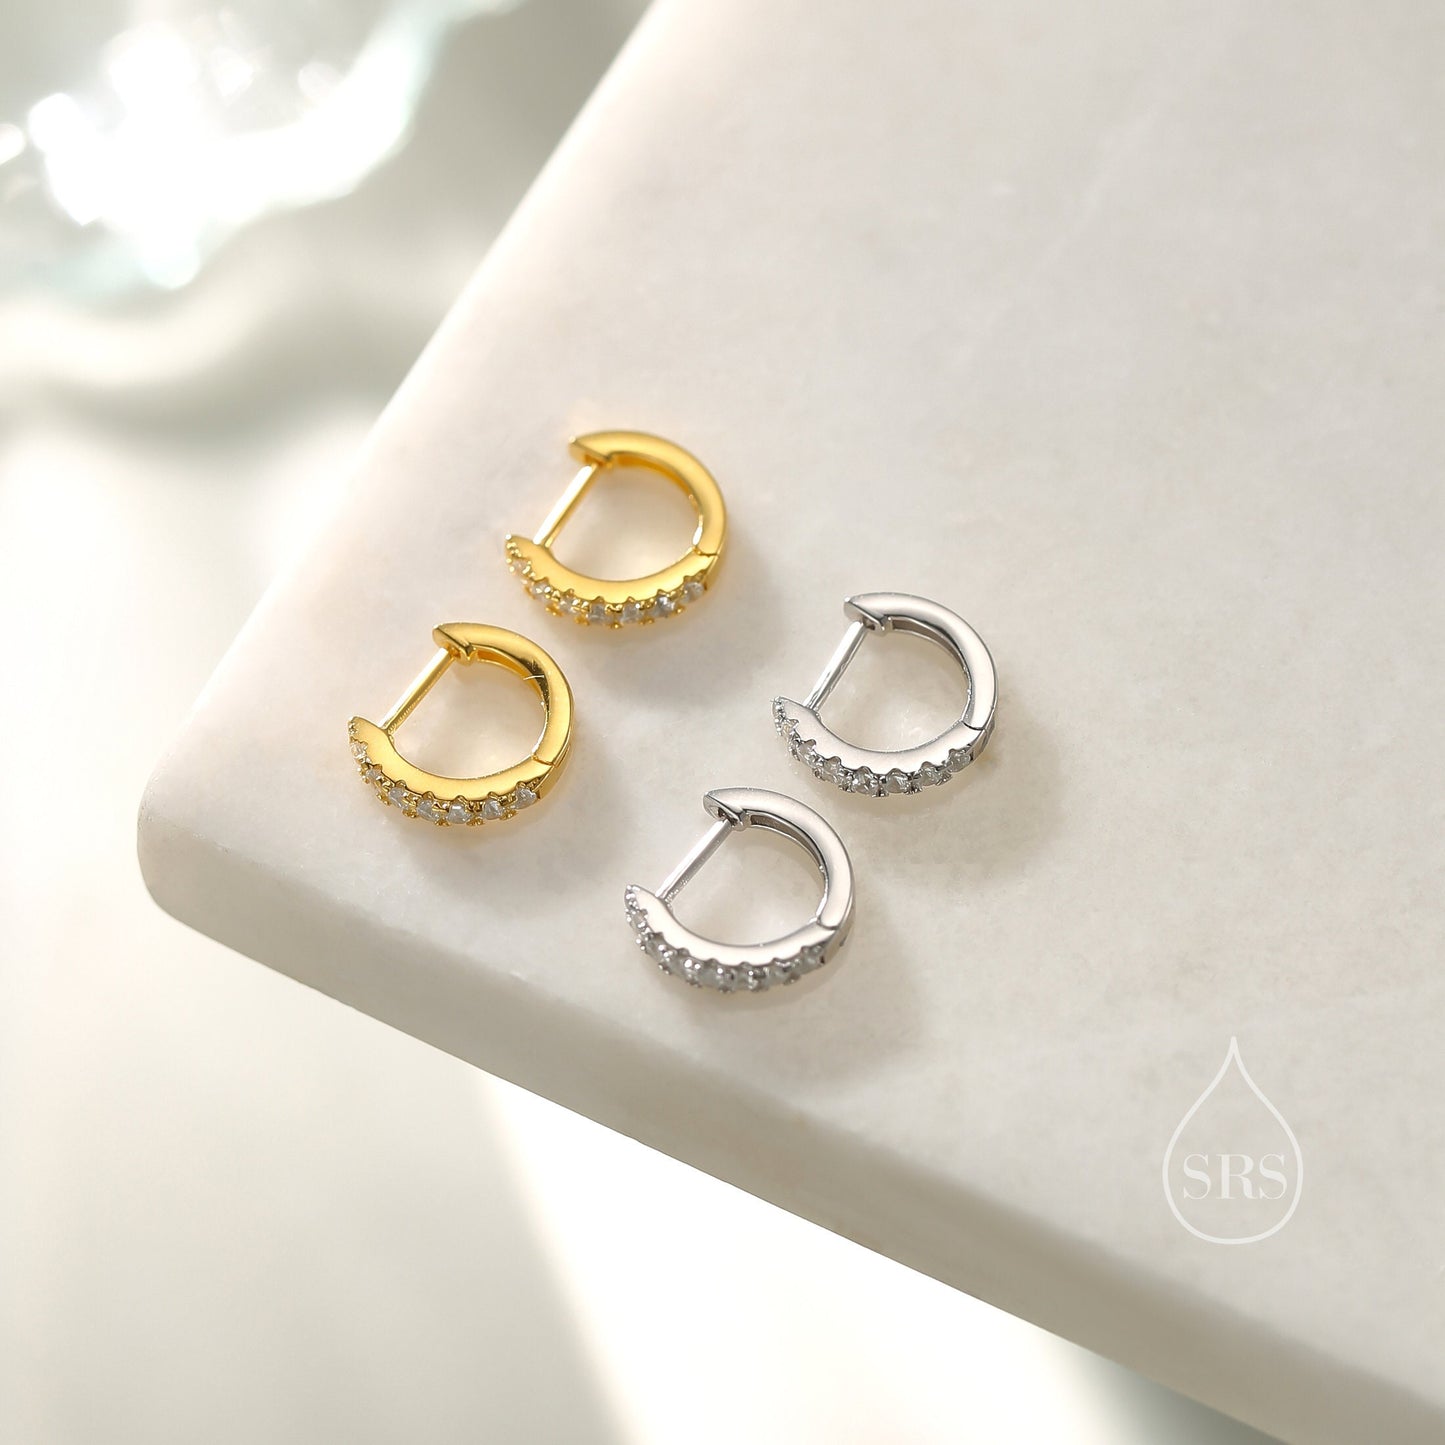 CZ Huggie Hoops in Sterling Silver, Silver or Gold, Minimalist Hoop Earrings, 8mm Hoops, cartilage hoops